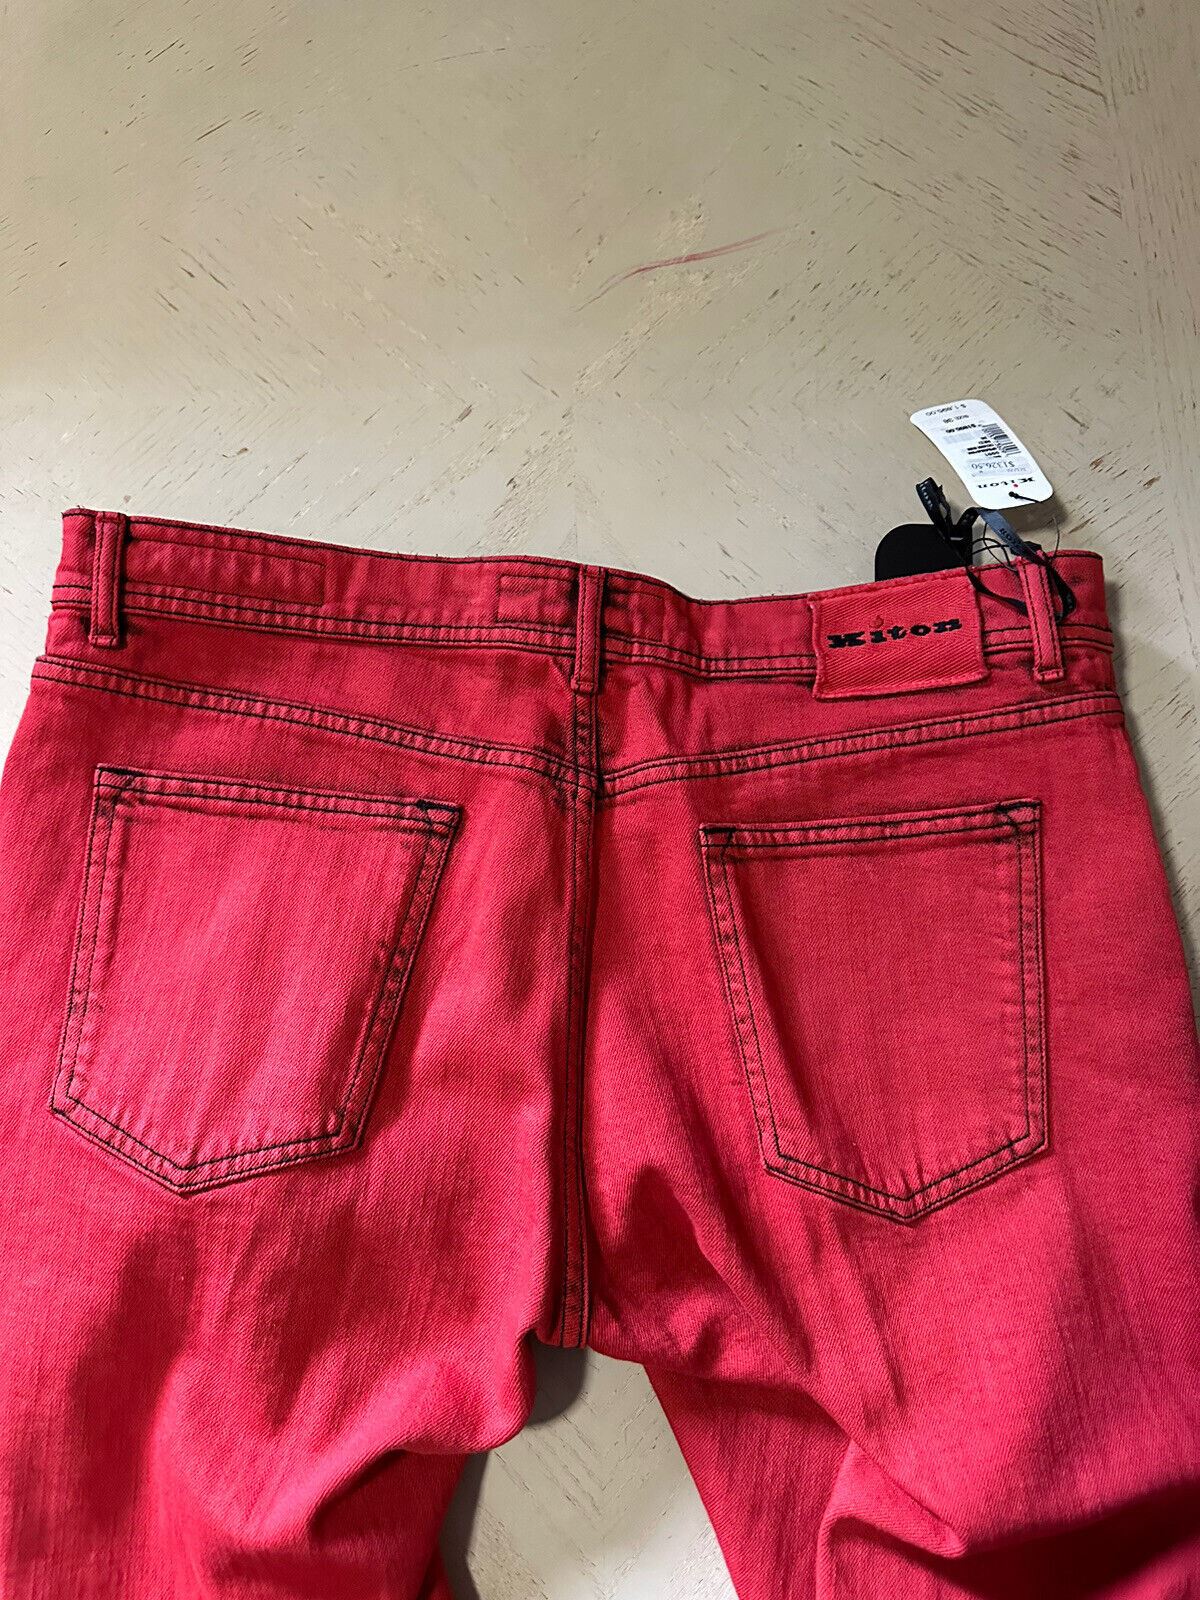 NWT $1895 Kiton Мужские прямые облегающие джинсовые брюки красные 38 США (размер 36)